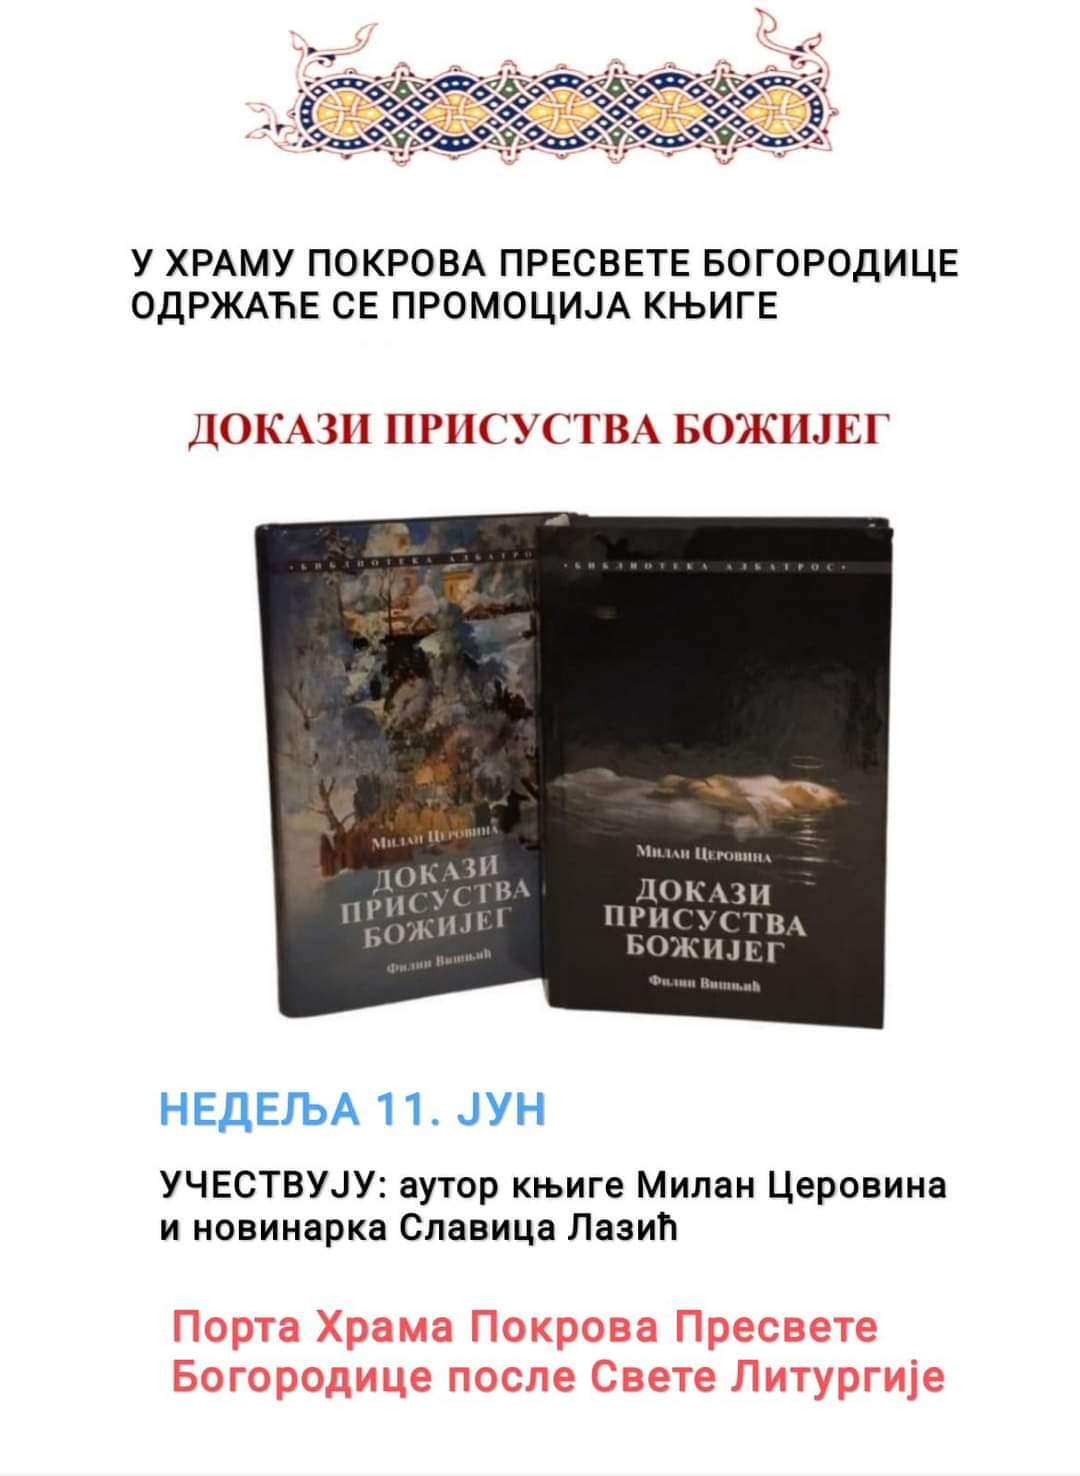 Најава: Промоција књиге у храму Покрова Пресвете Богородице у Петроварадину